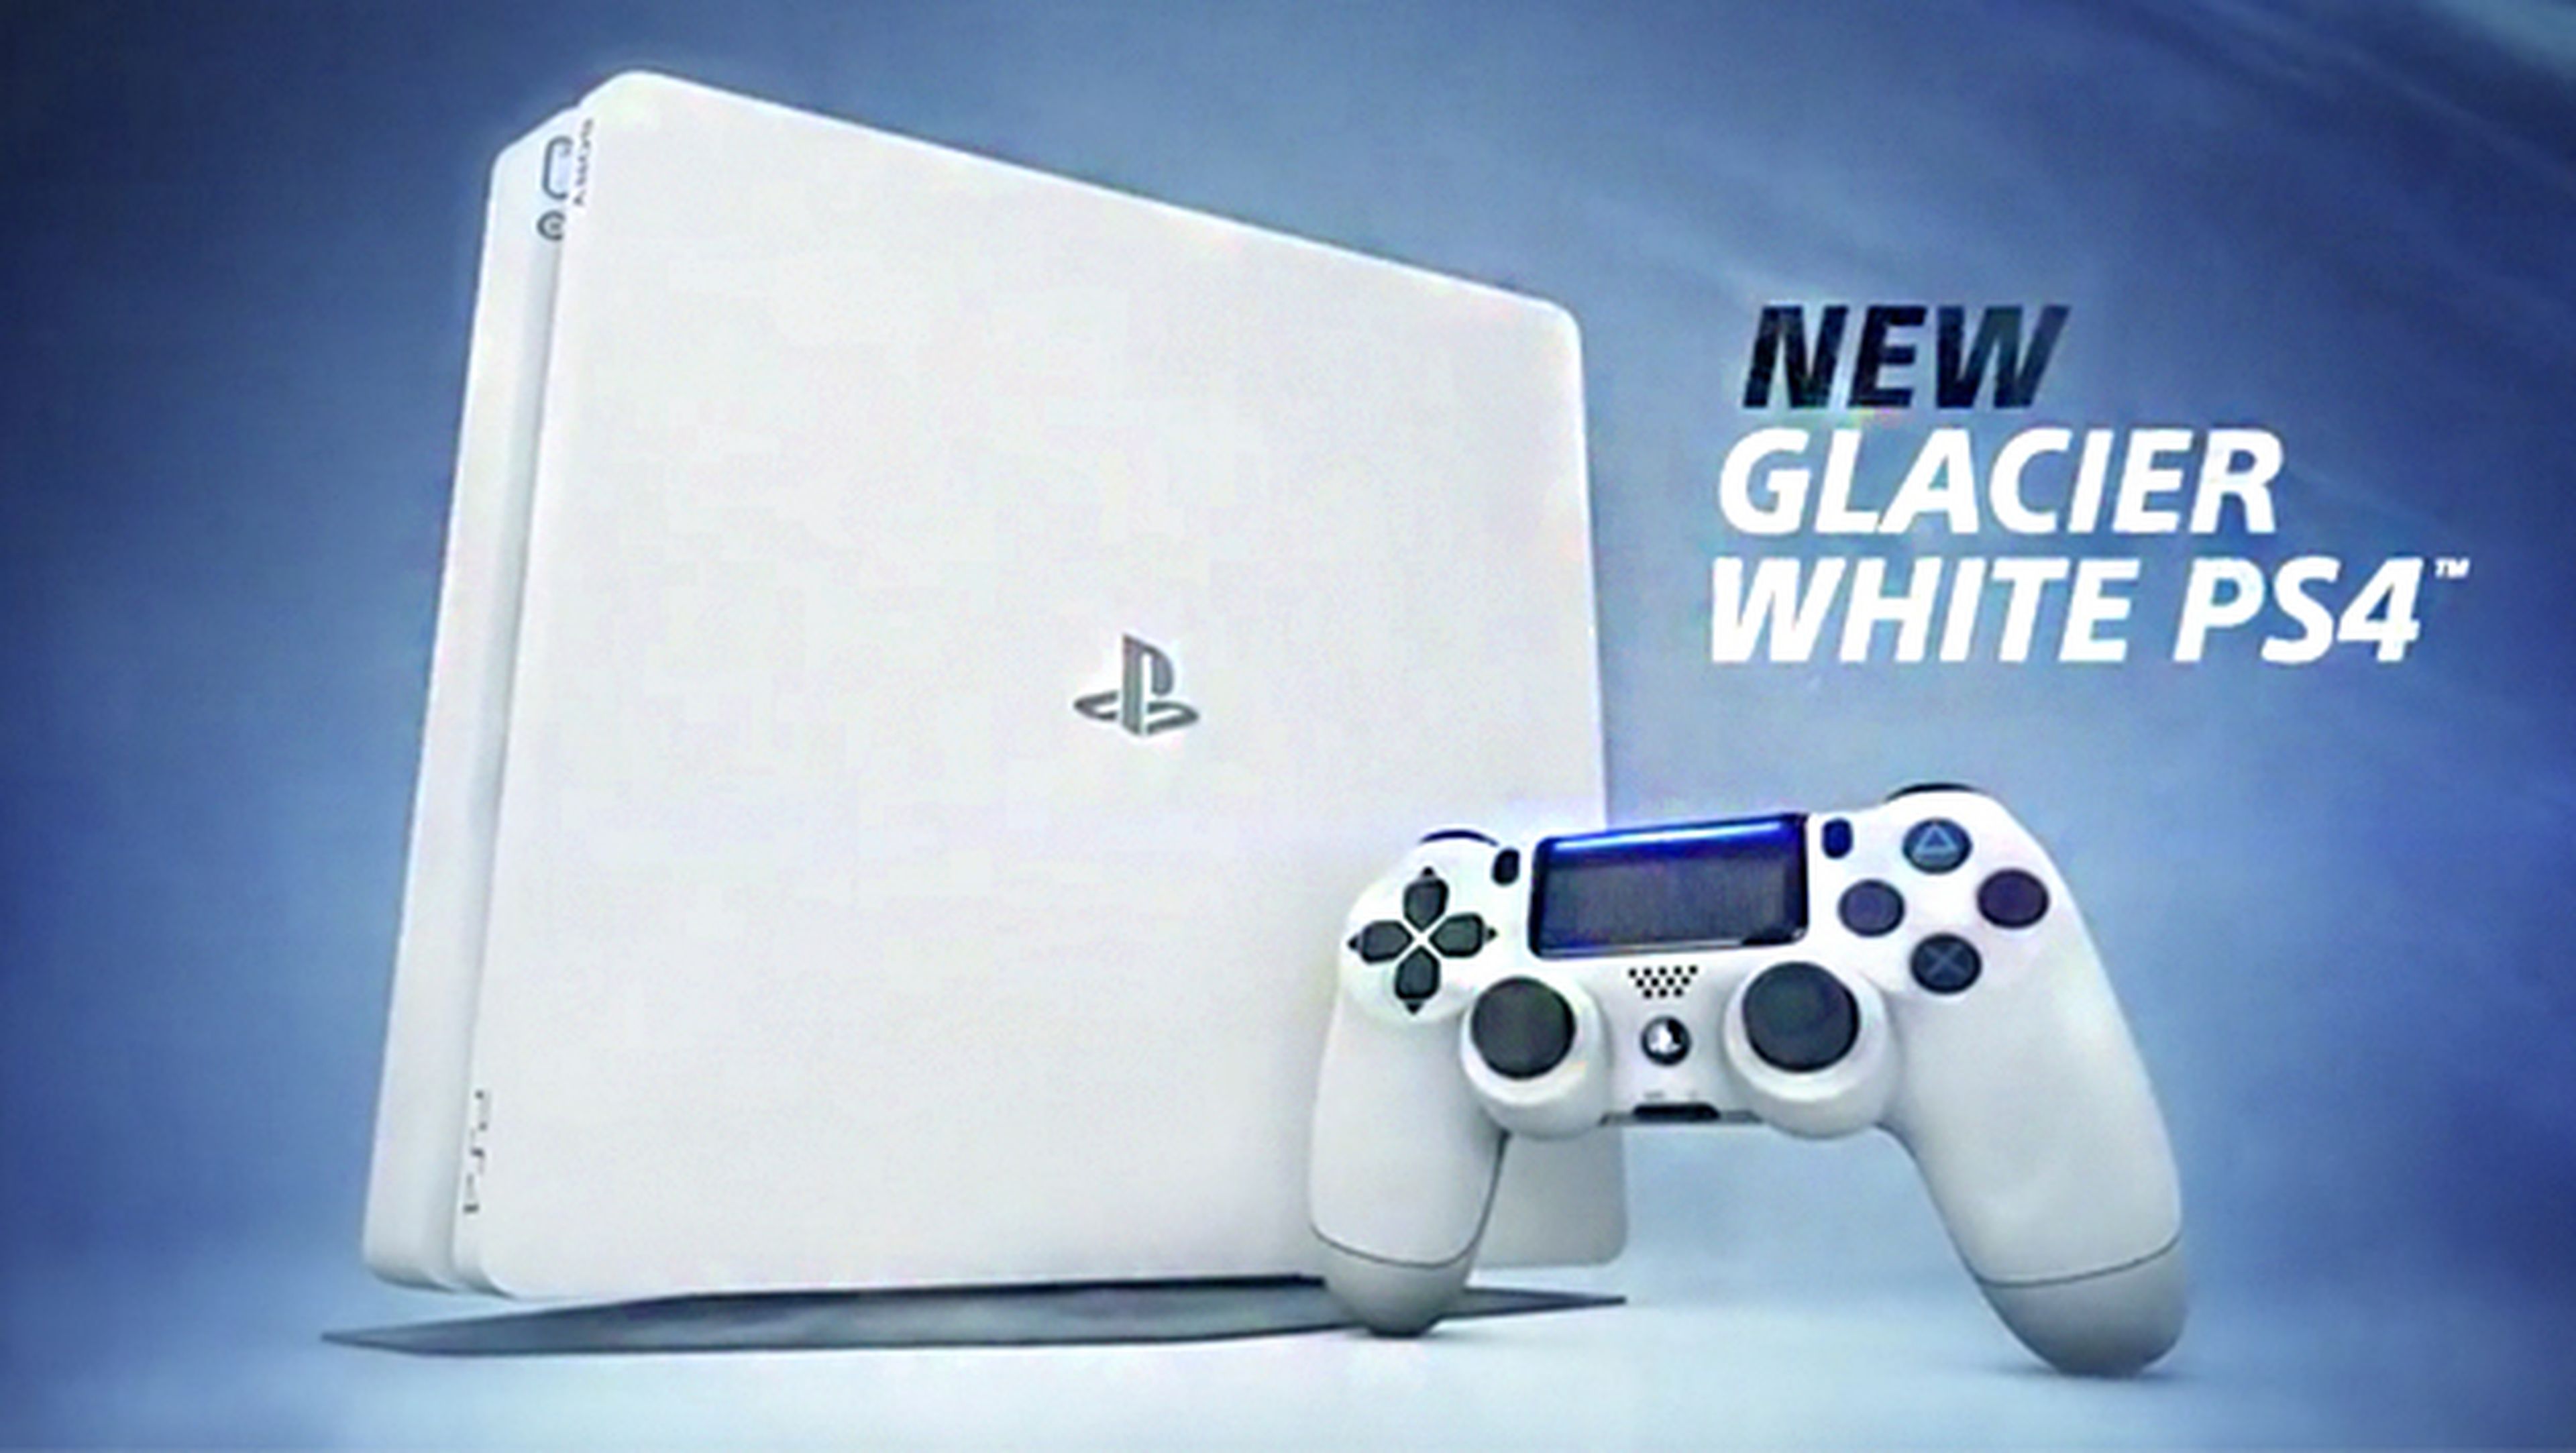 Así es la PS4 Glacier White, el modelo Slim en blanco